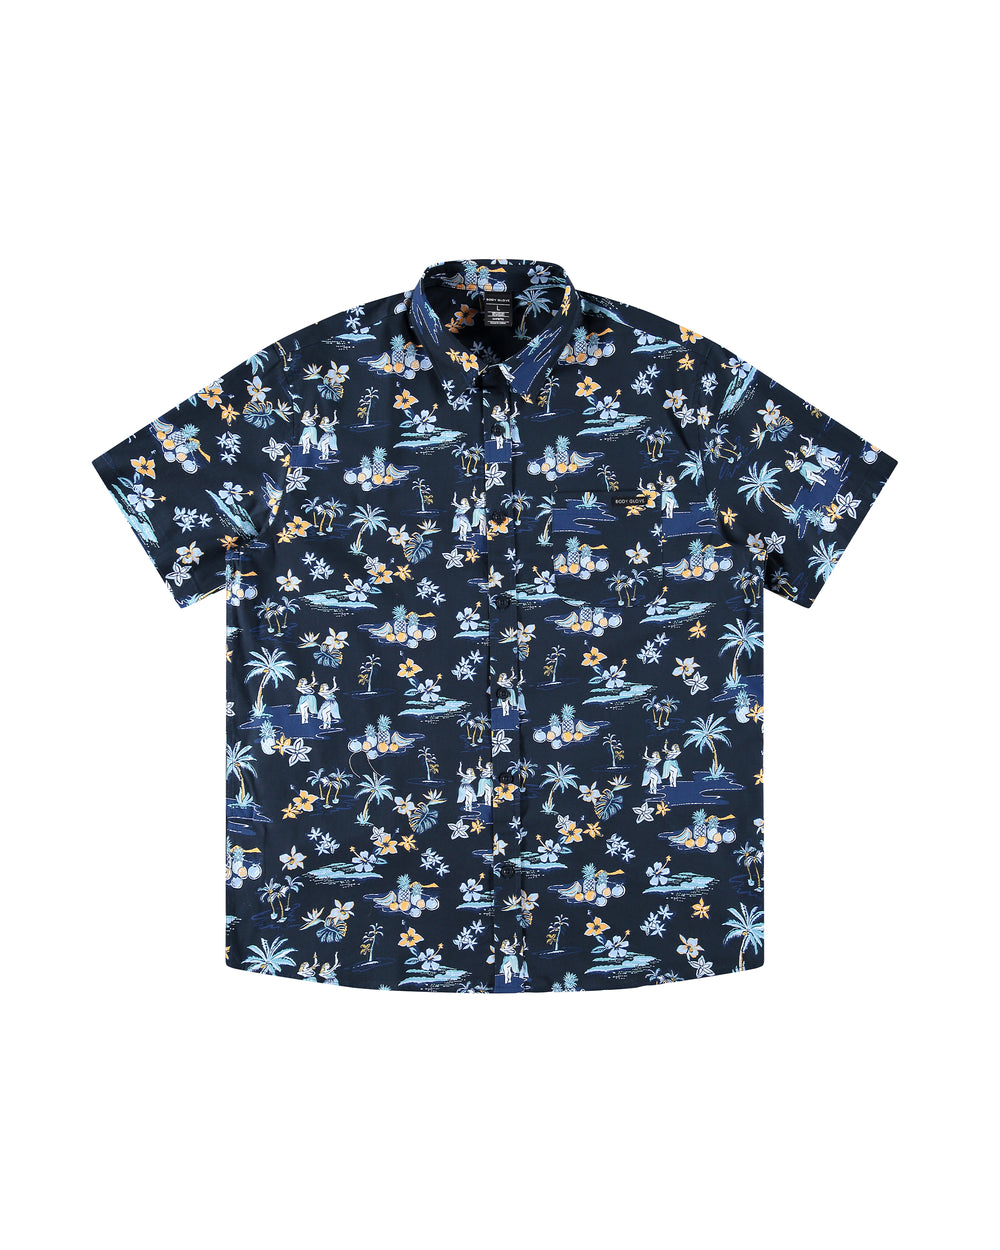 Hapuna Button-Up Shirt - Navy